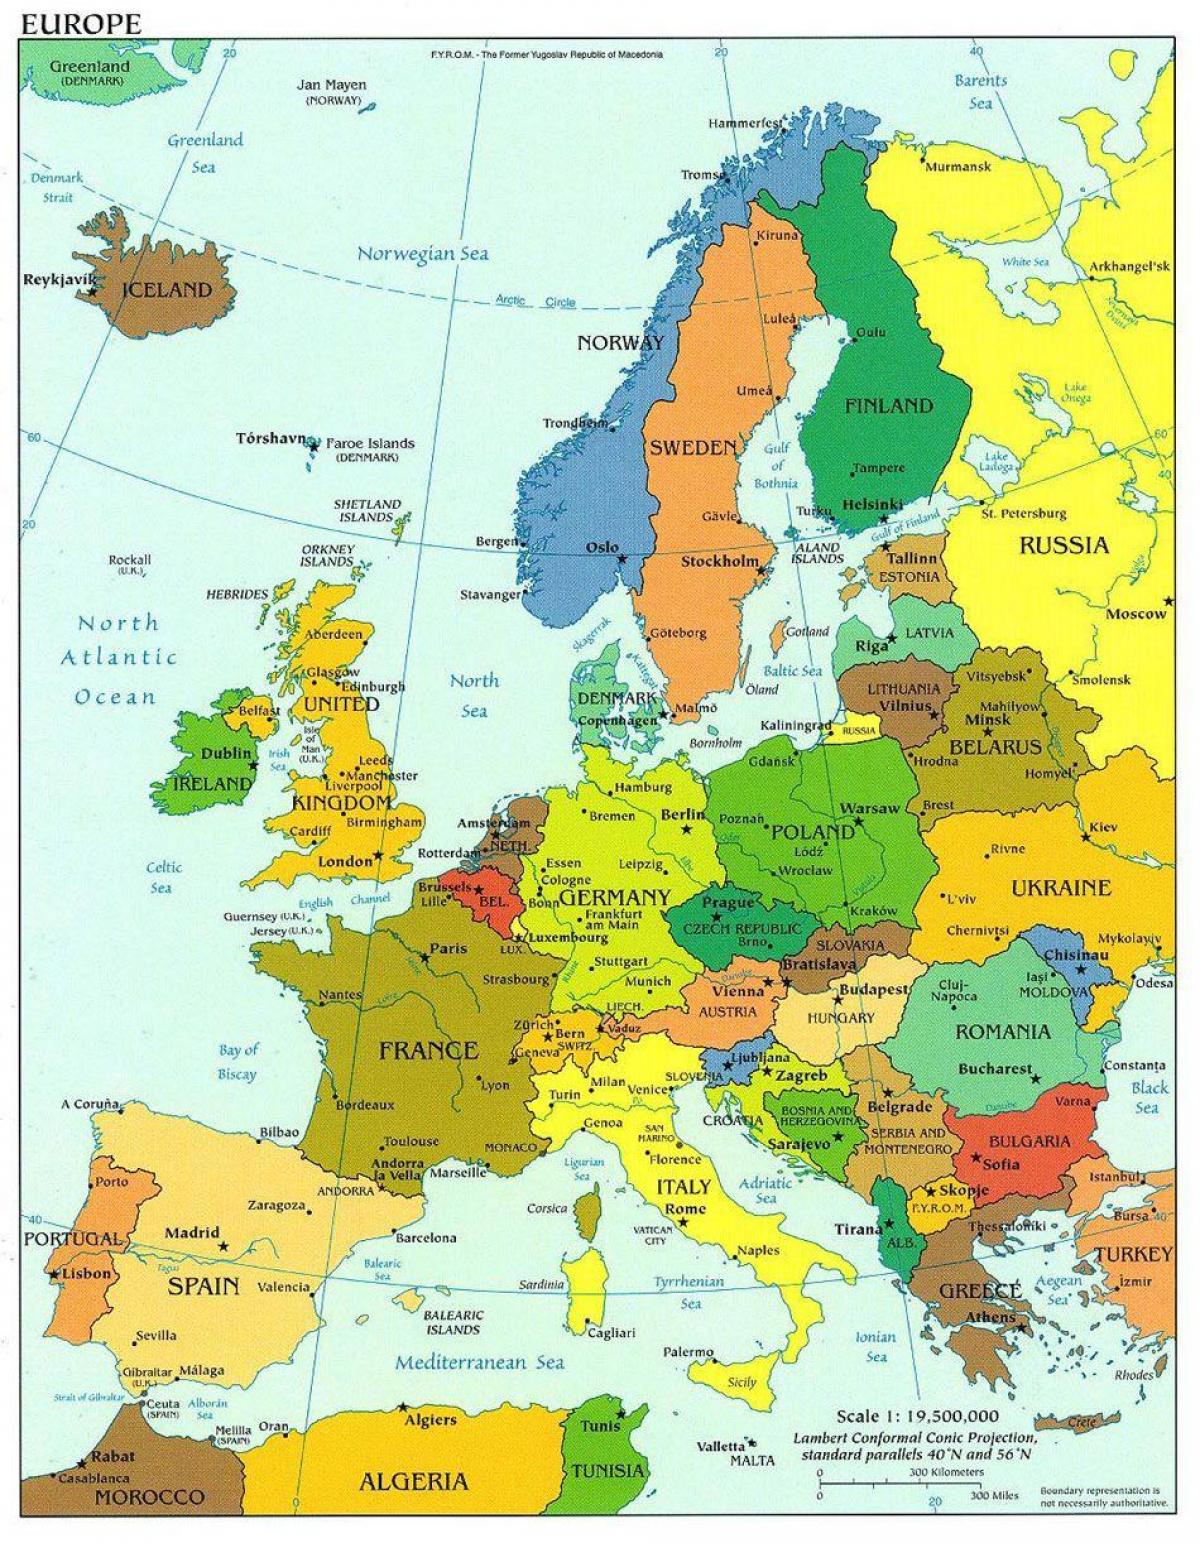 یورپ کا نقشہ دکھا ڈنمارک